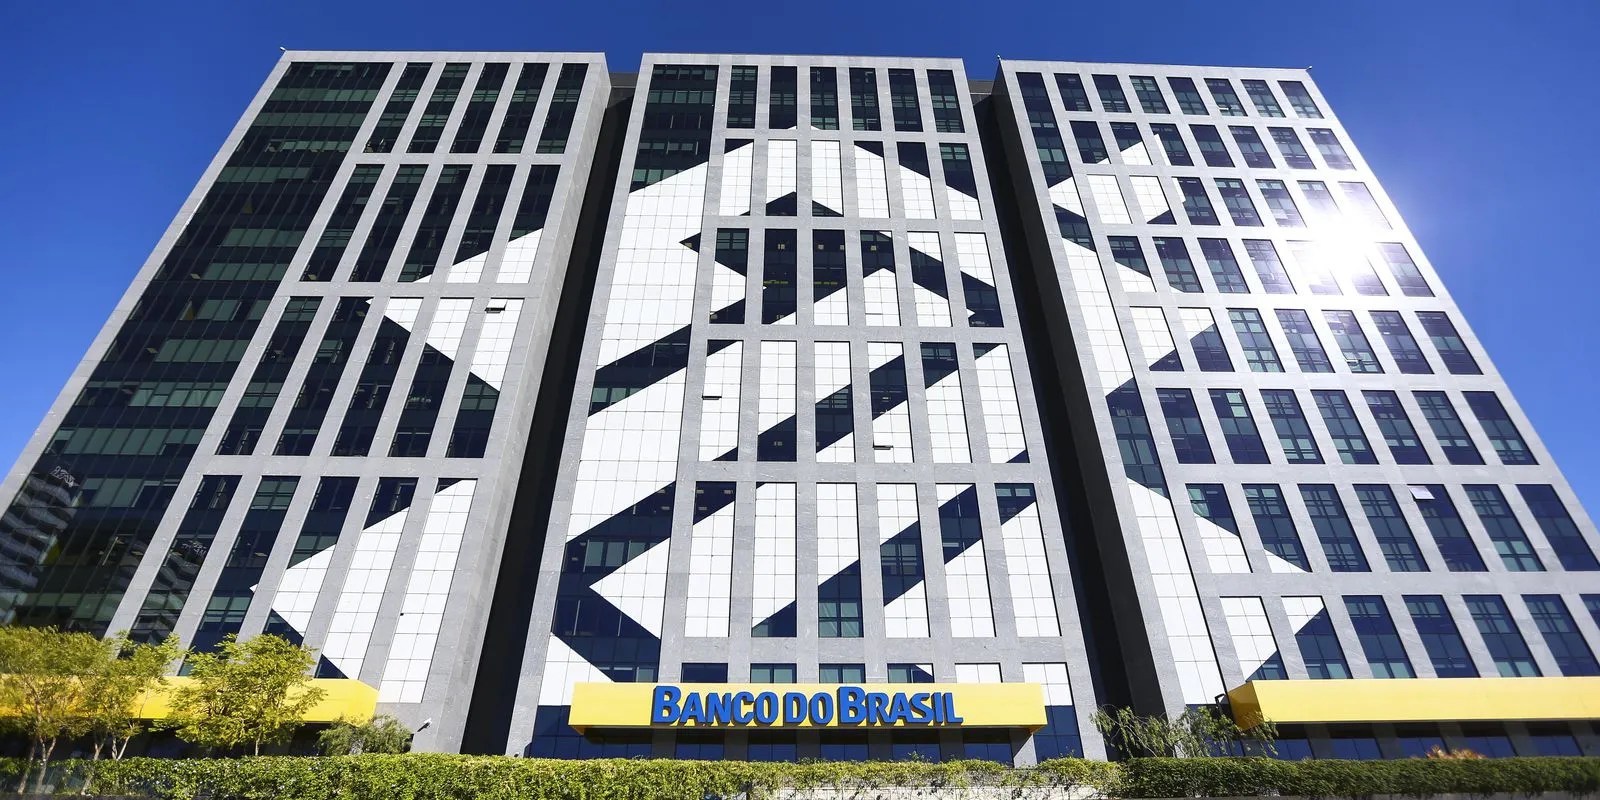 Foto do edifício sede do Banco do Brasil, em Brasília (DF), um prédio de vidro com o logo do BB, um dos bancos com agenda para pagar dividendos em junho.